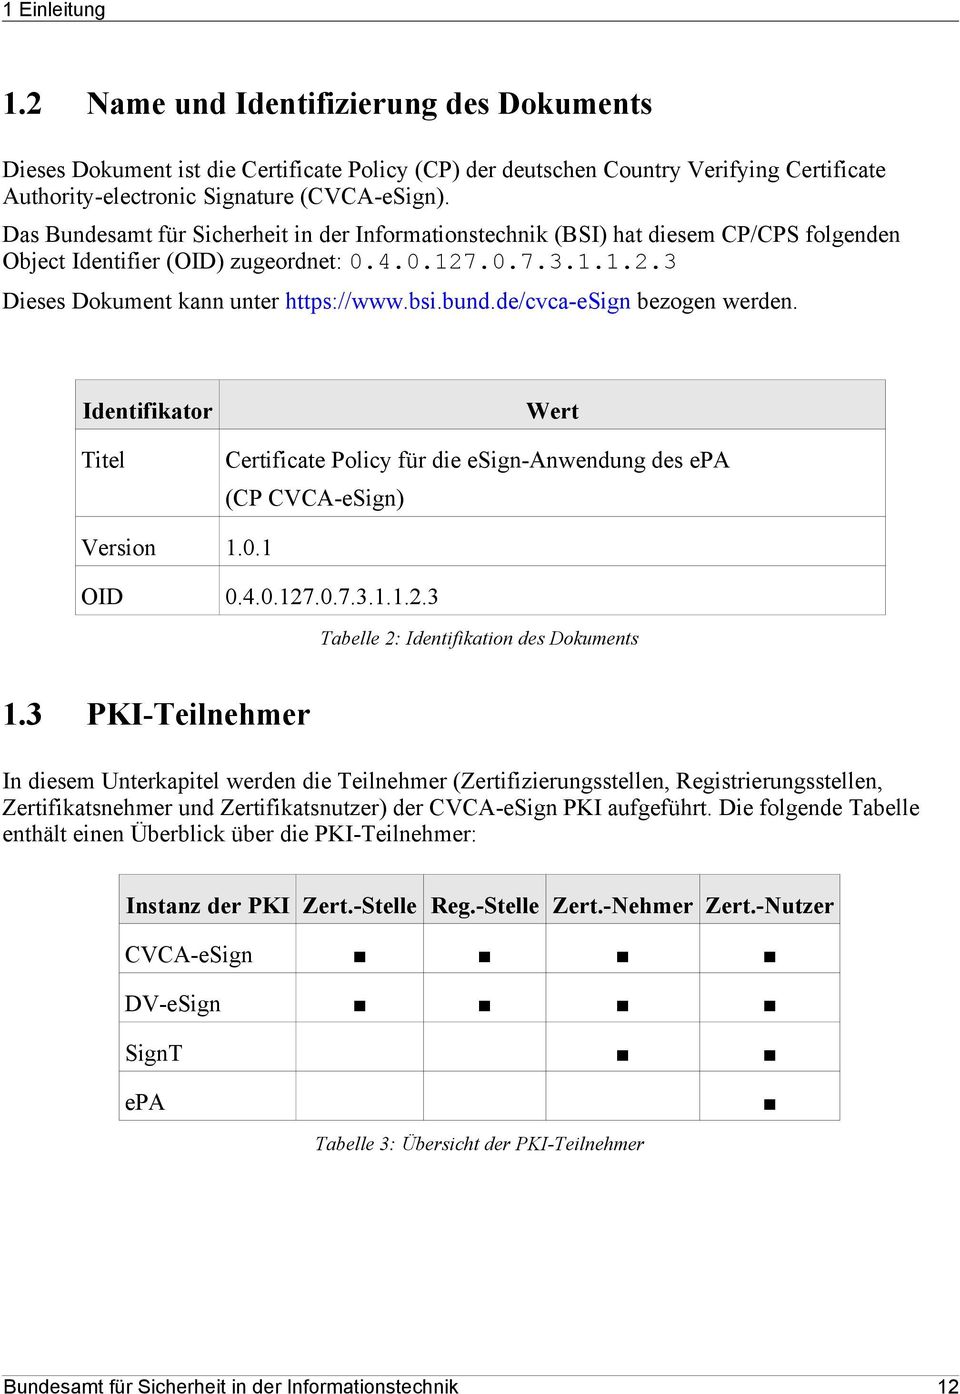 de/cvca-esign bezogen werden. Identifikator Titel Wert Certificate Policy für die esign-anwendung des epa (CP CVCA-eSign) Version 1.0.1 OID 0.4.0.127.0.7.3.1.1.2.3 Tabelle 2: Identifikation des Dokuments 1.